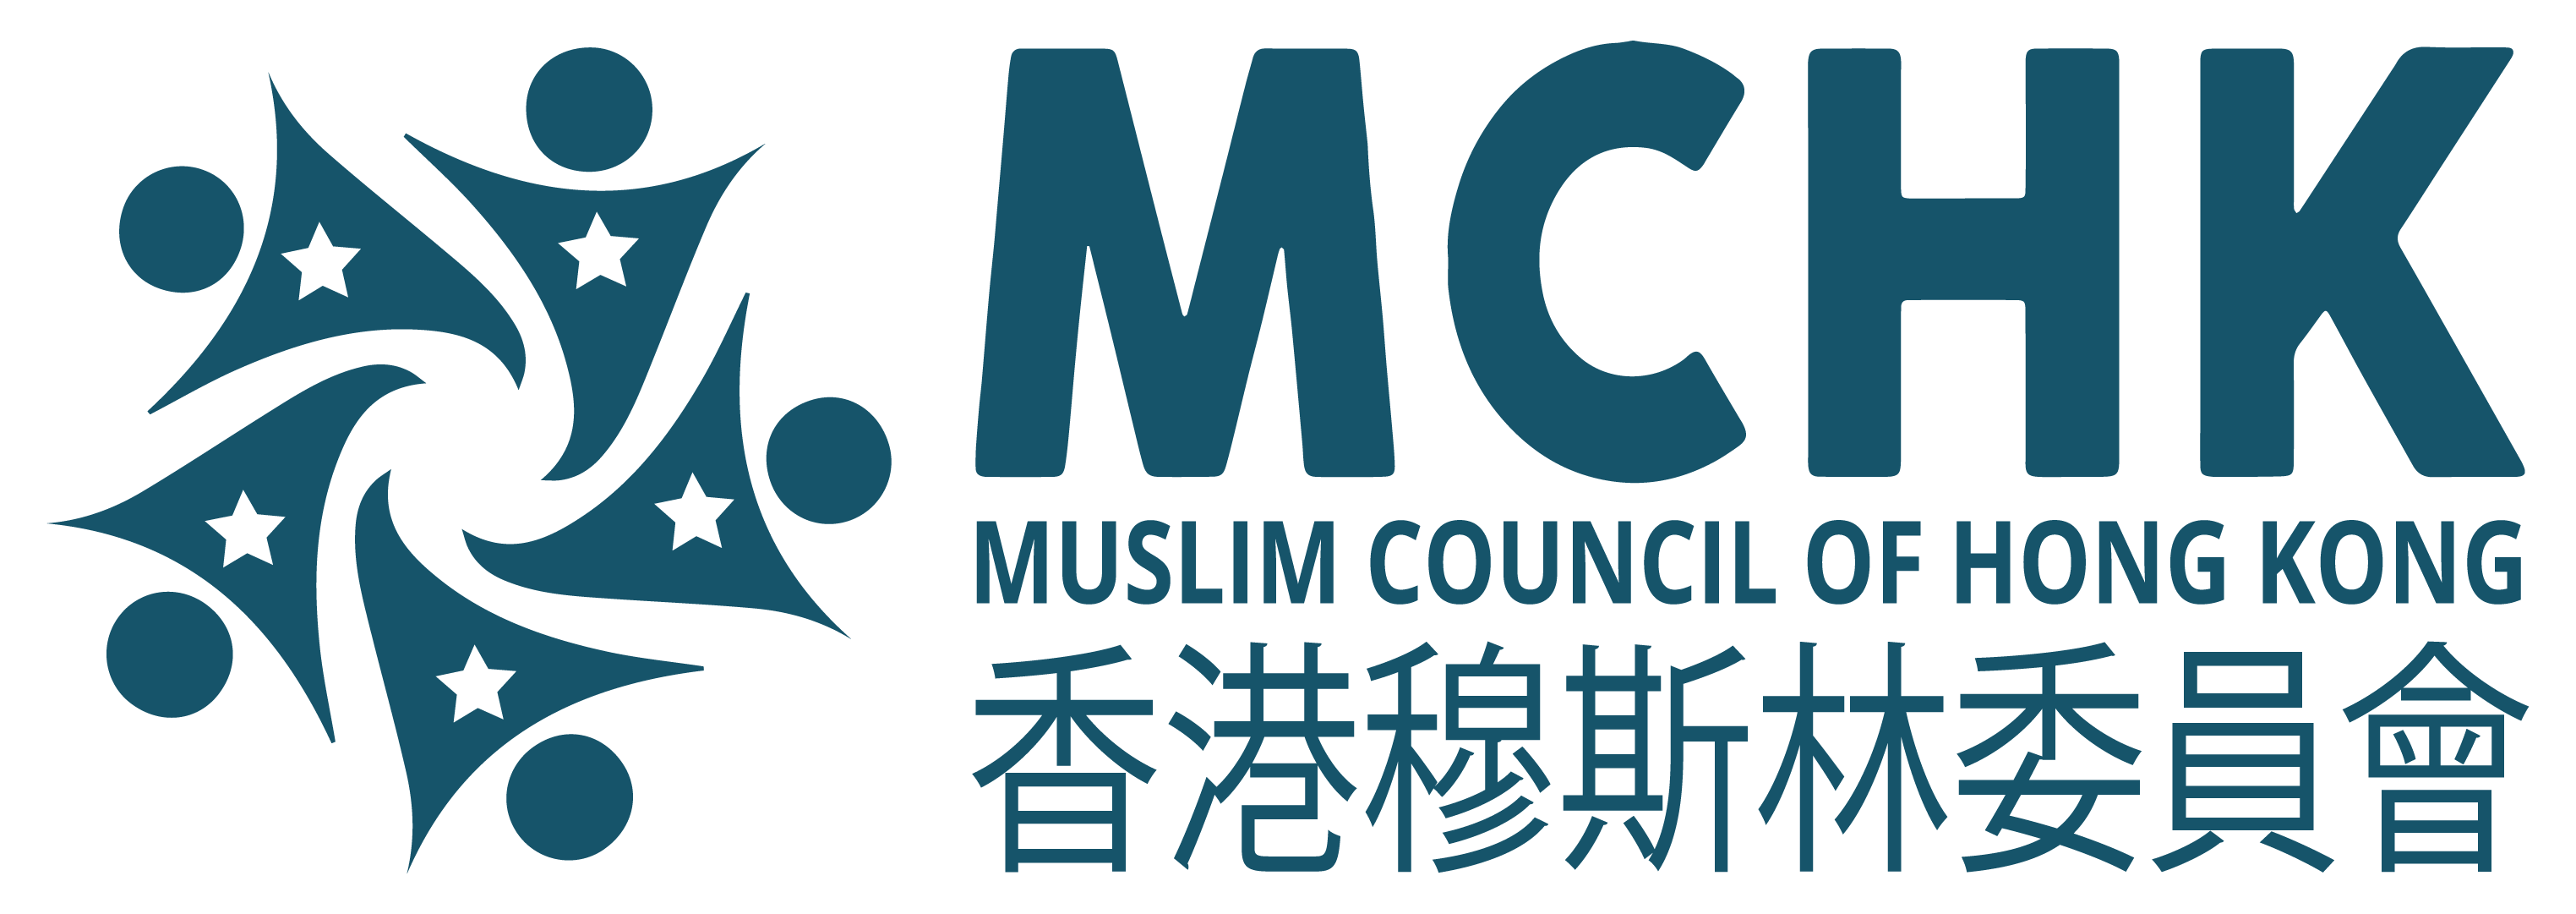 Muslim Council of Hong Kong